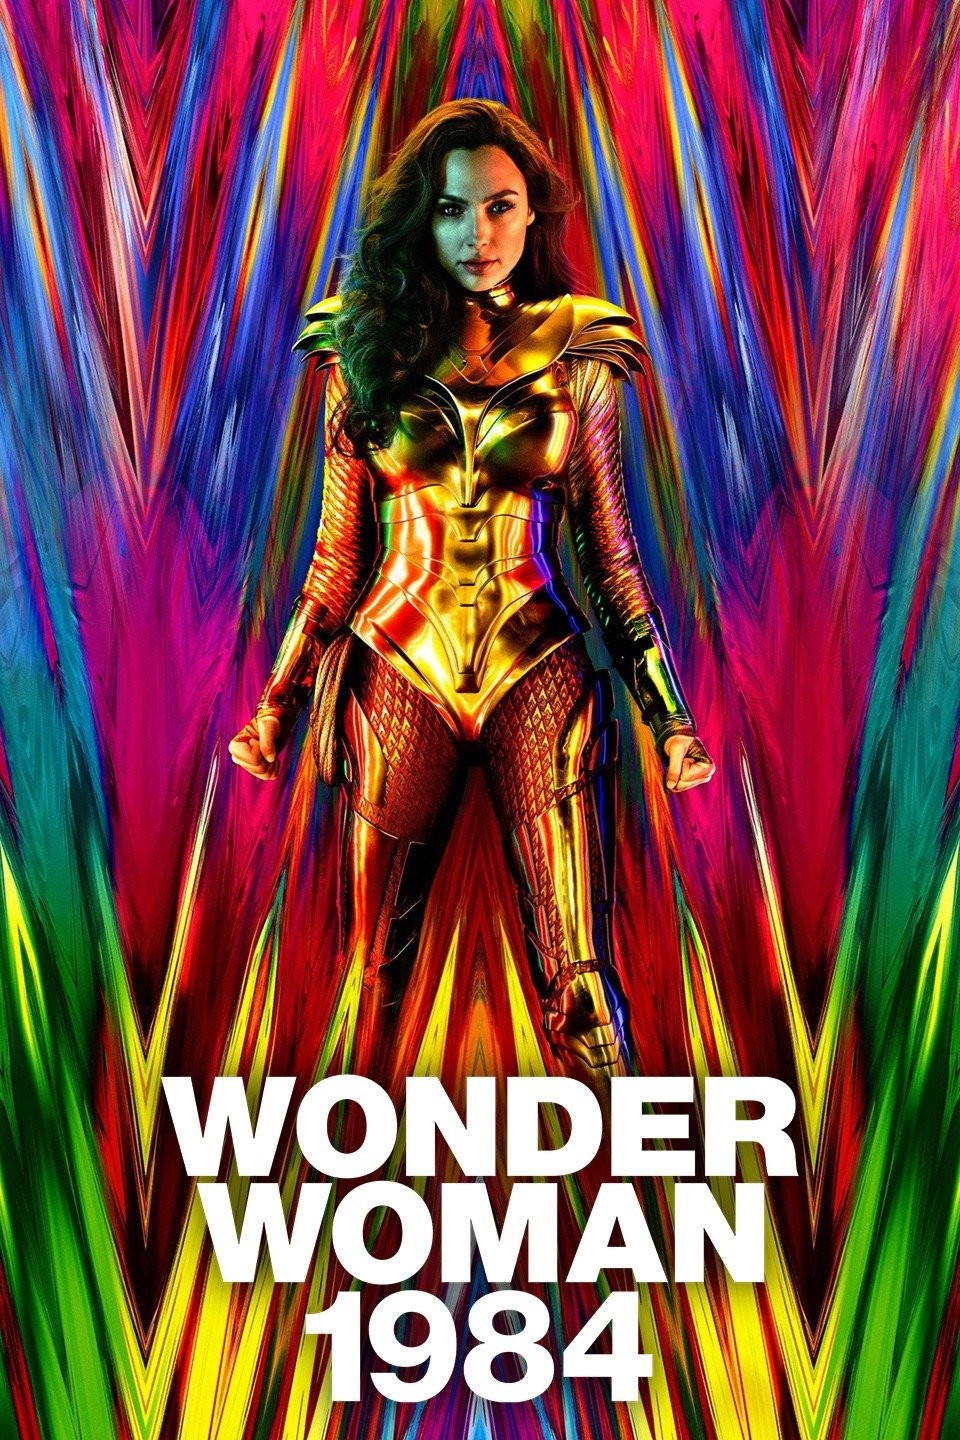 Wonder Woman (2017) VS. Wonder Woman 1984 (2020) 